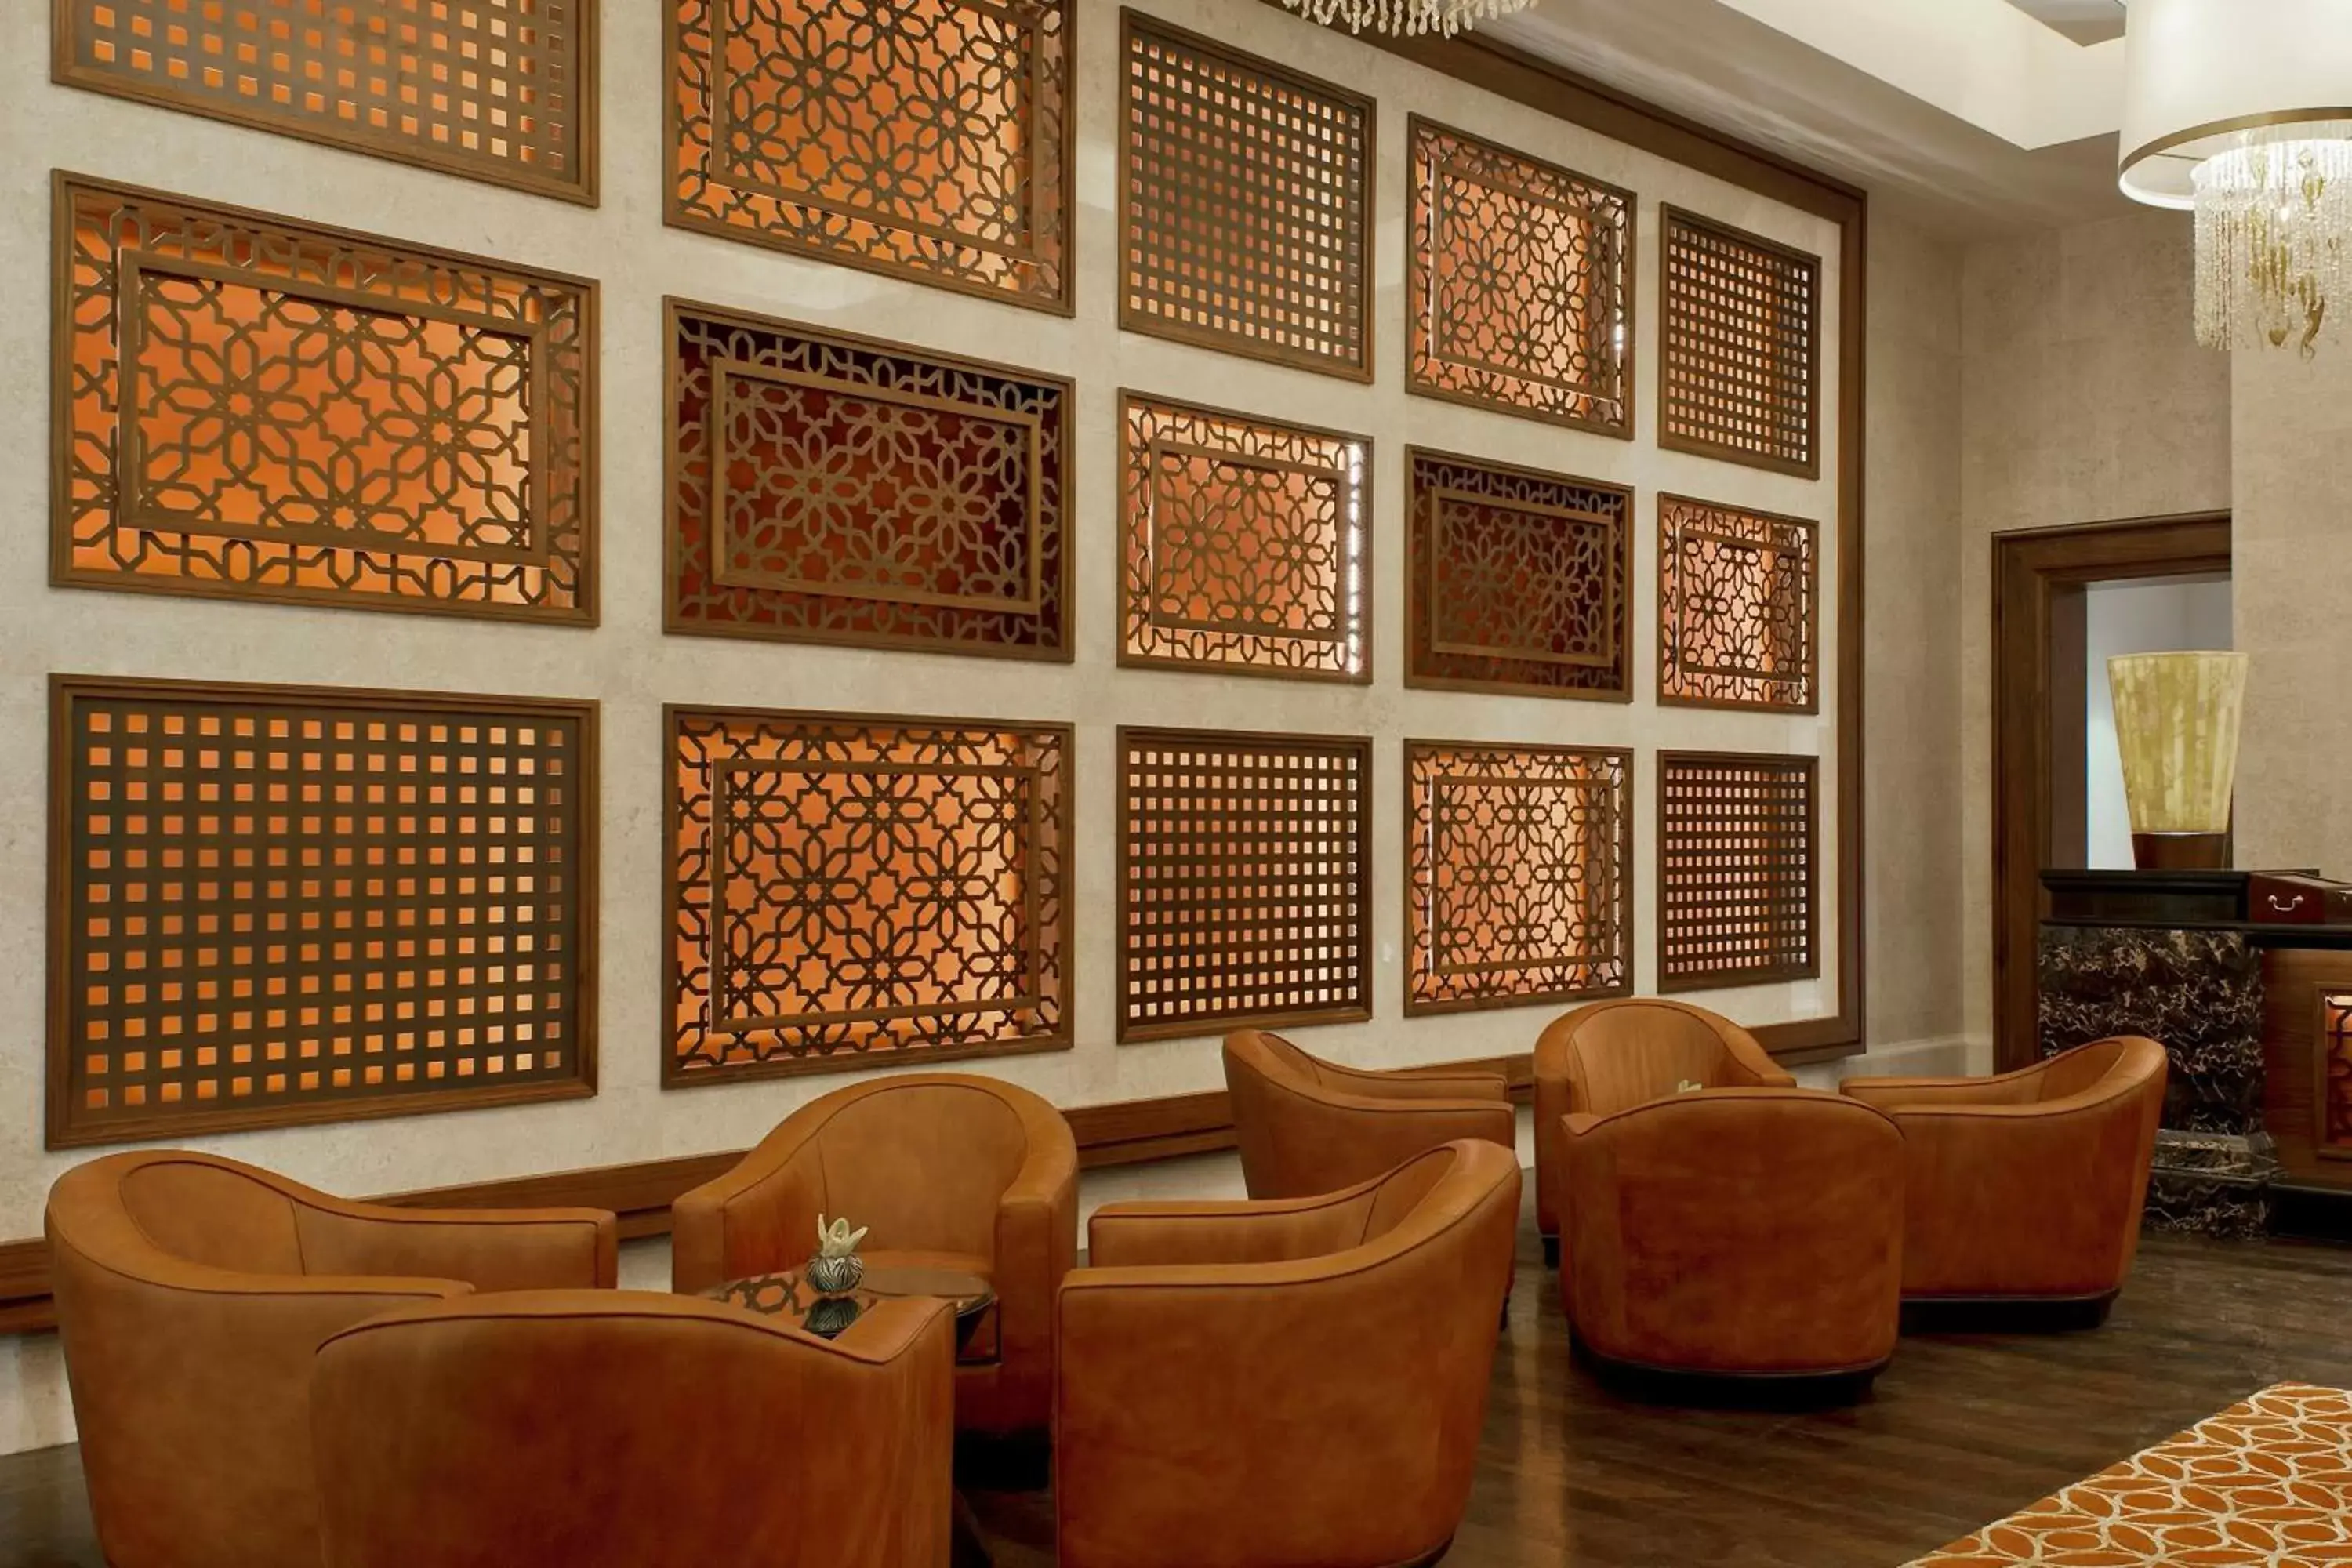 Lounge or bar, Lobby/Reception in The St. Regis Saadiyat Island Resort, Abu Dhabi